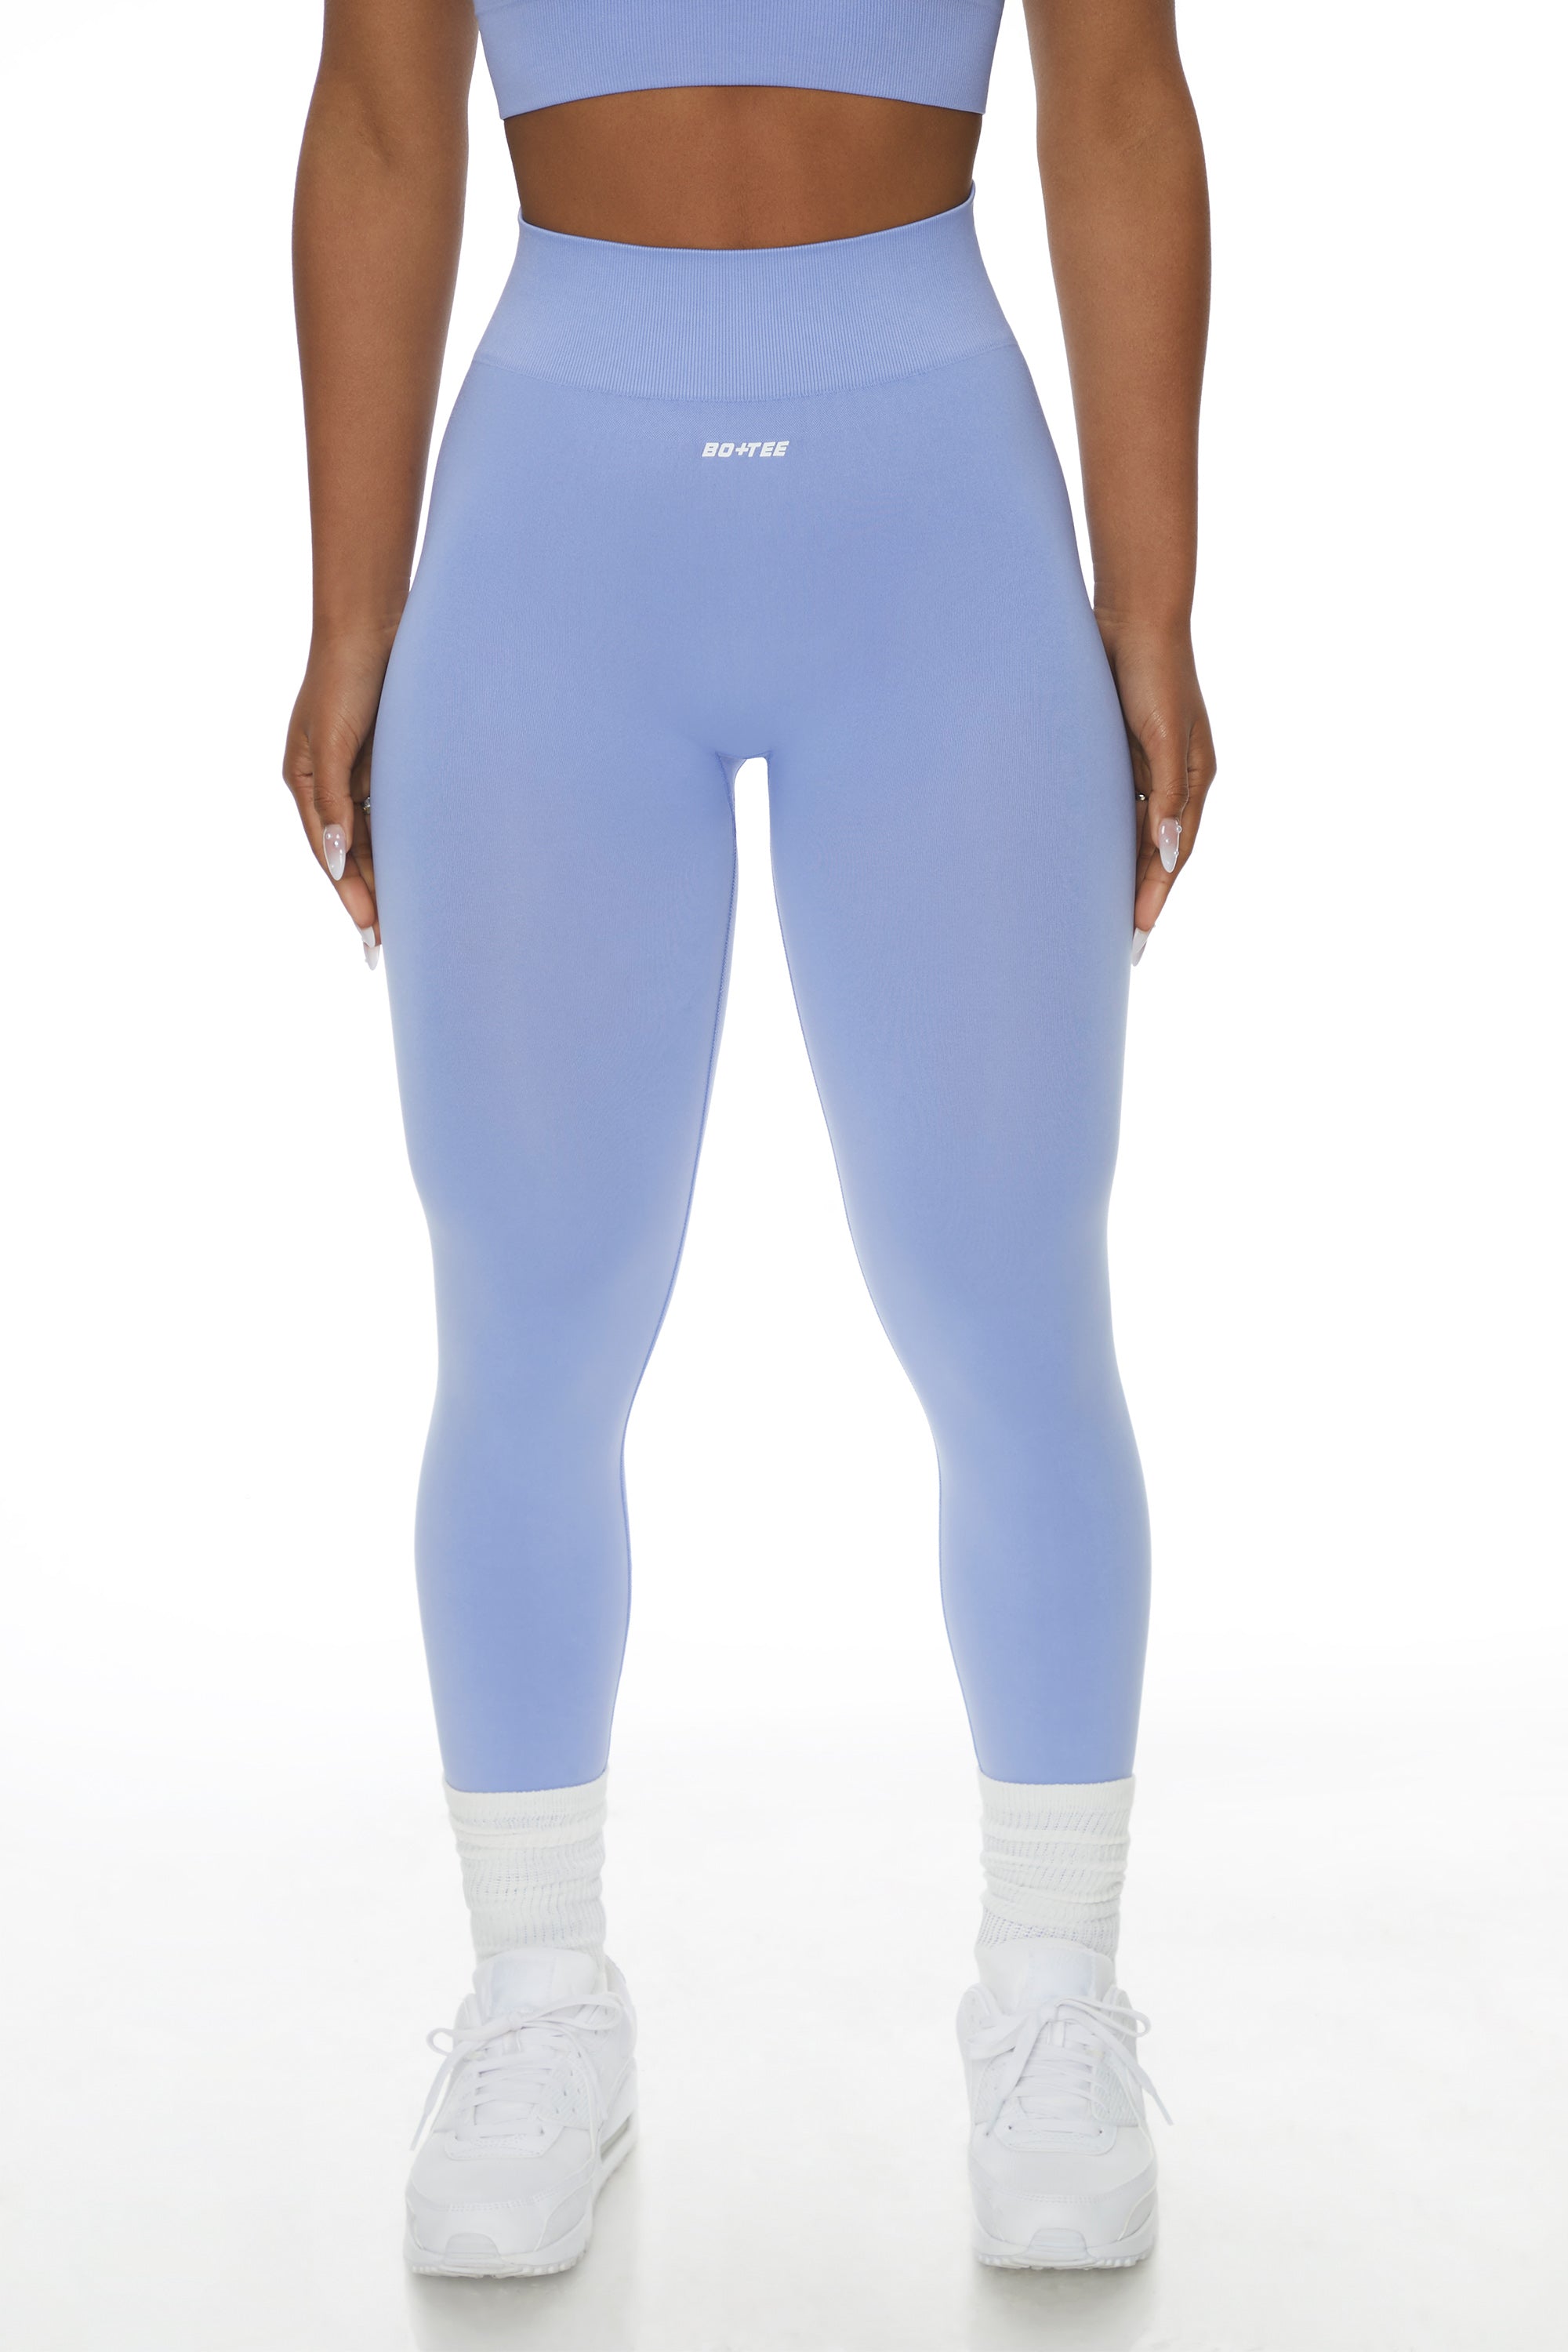 Buy SASHTITHA Regular Fit Full Length Ankle Length Leggings Blue Color Slim  Bottom - XXL at